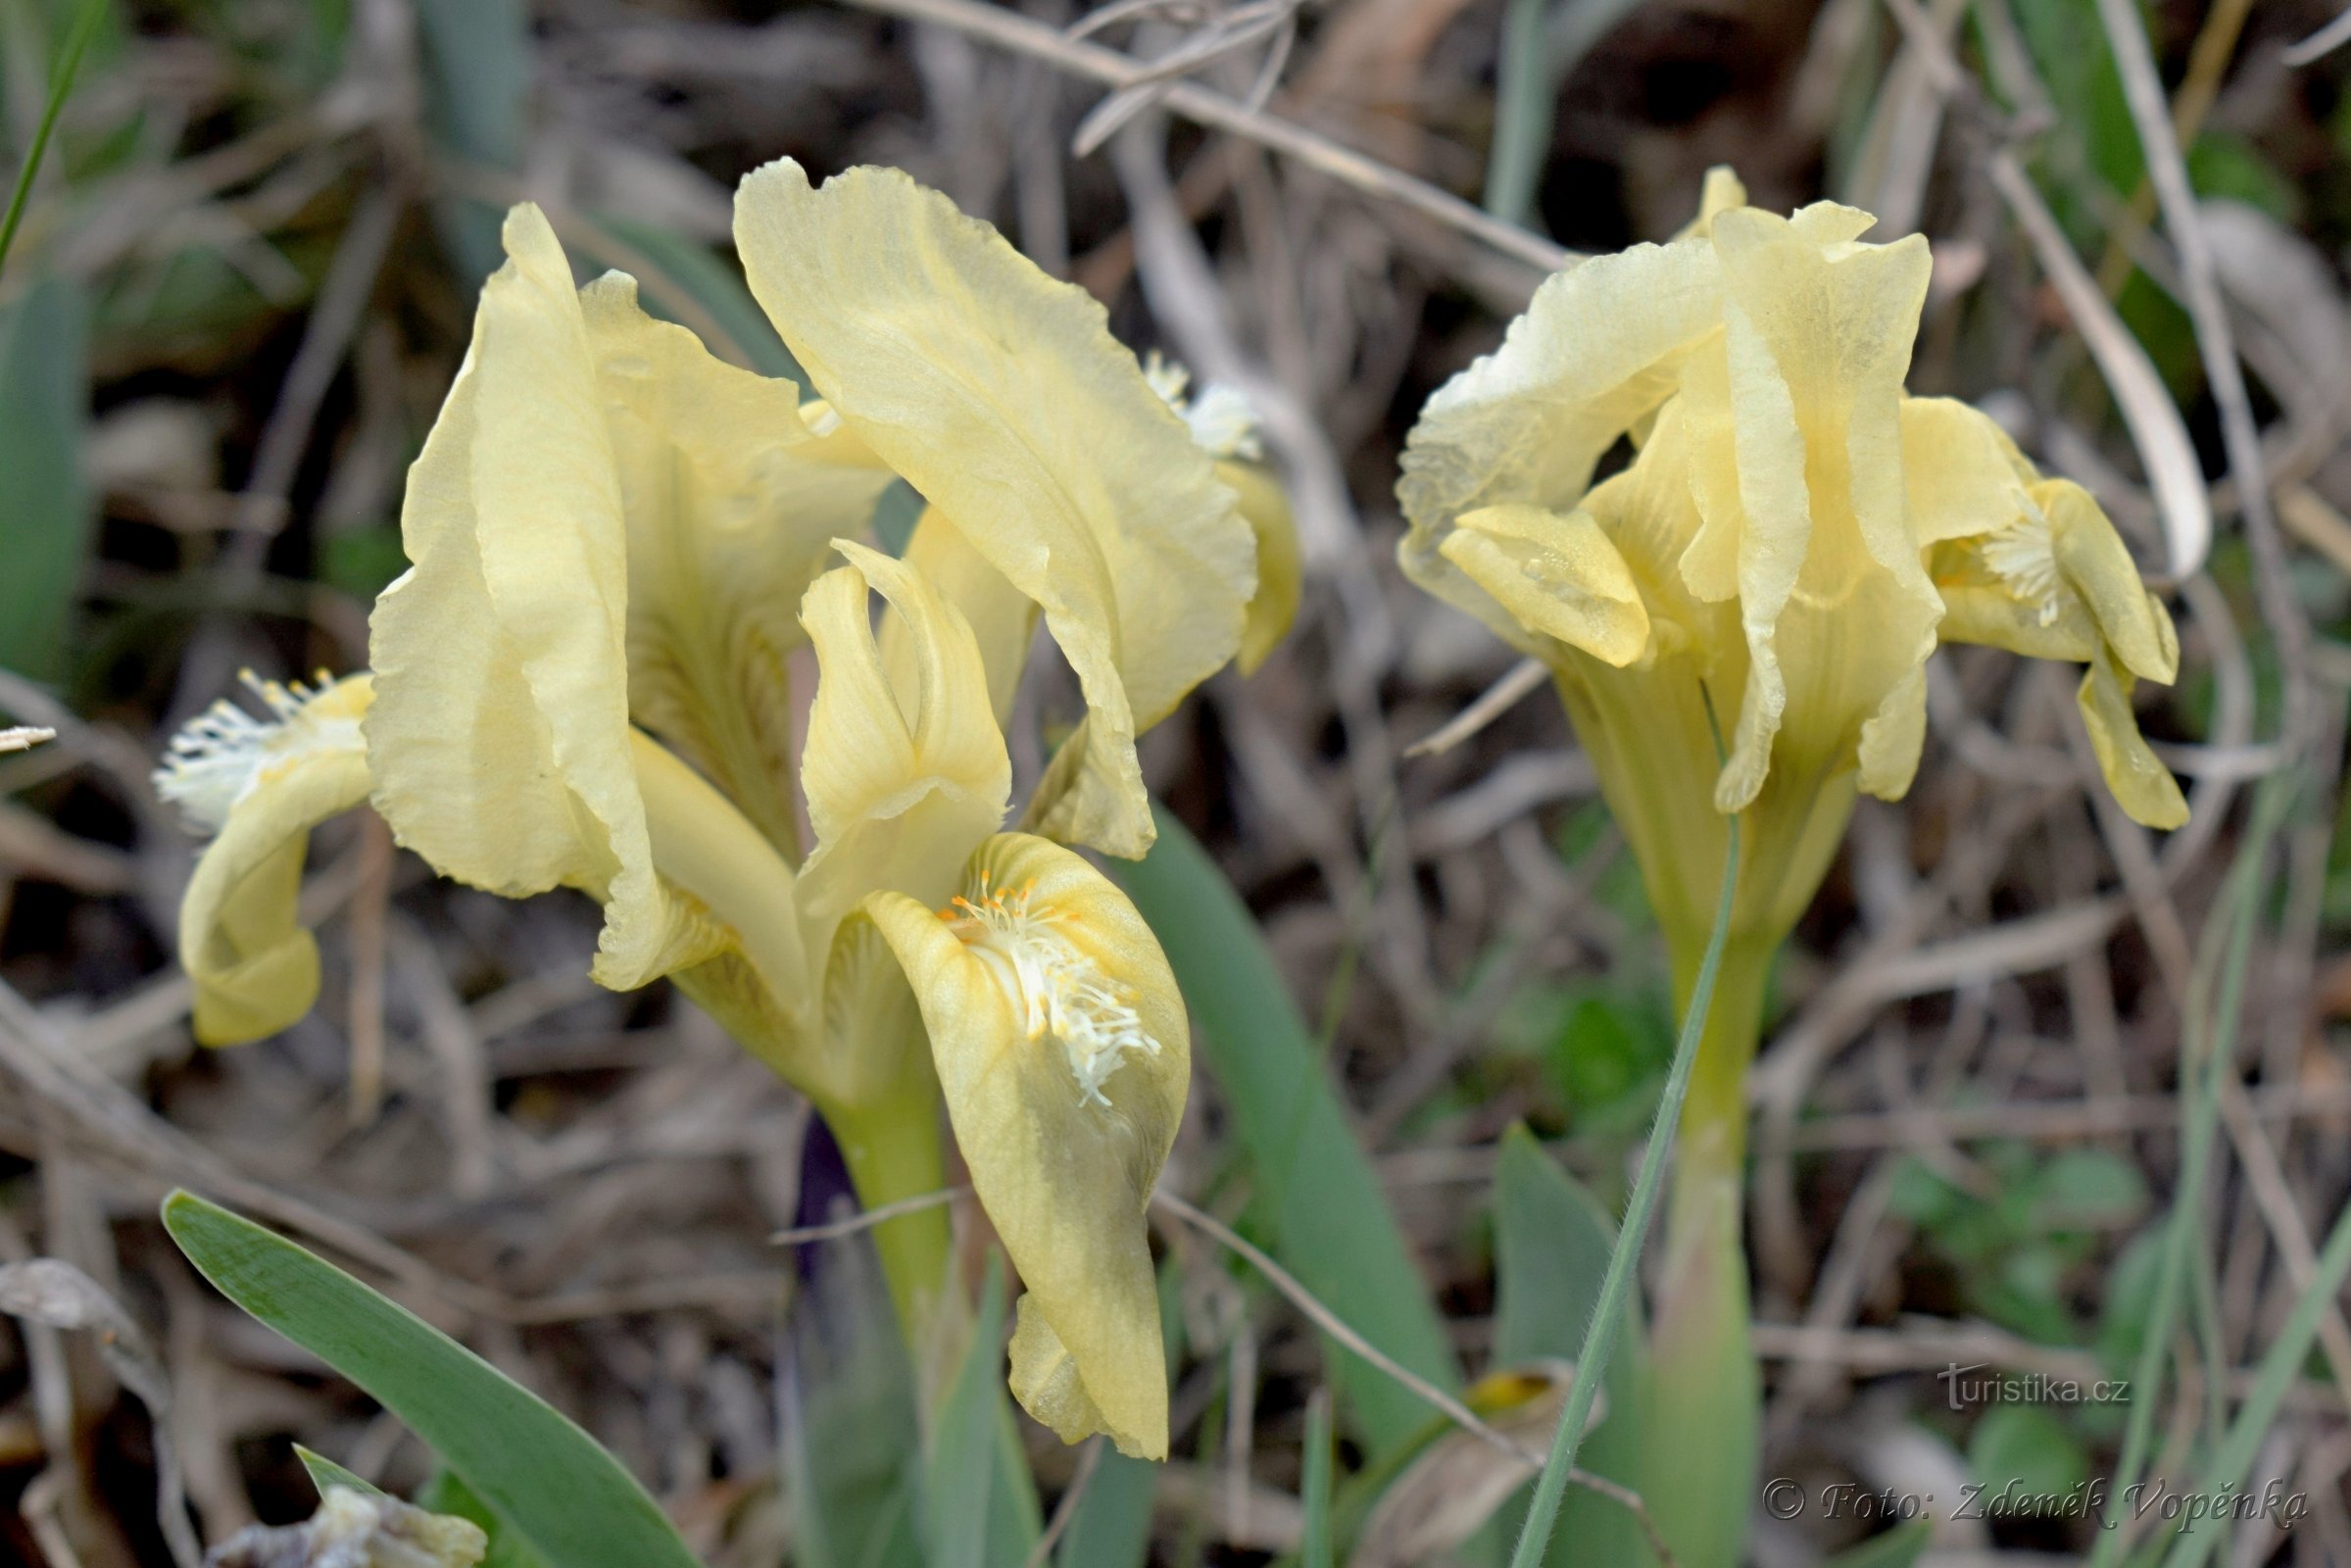 Iris de sable.